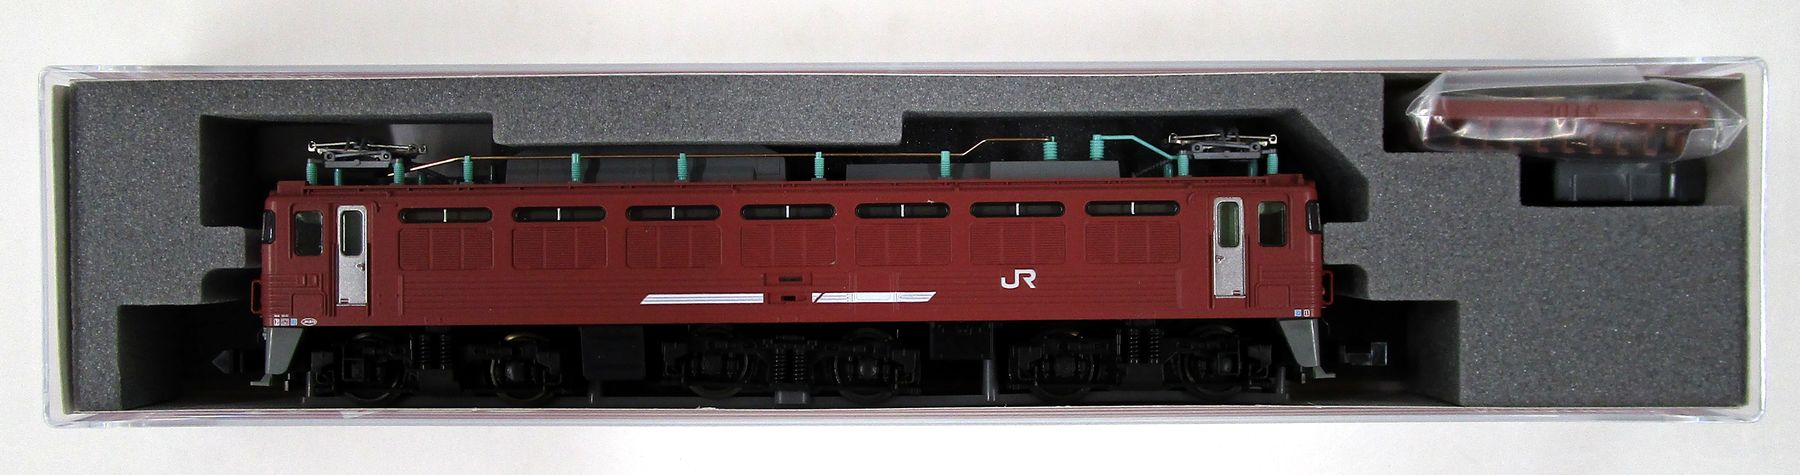 3067-A EF81-300 ローズピンク